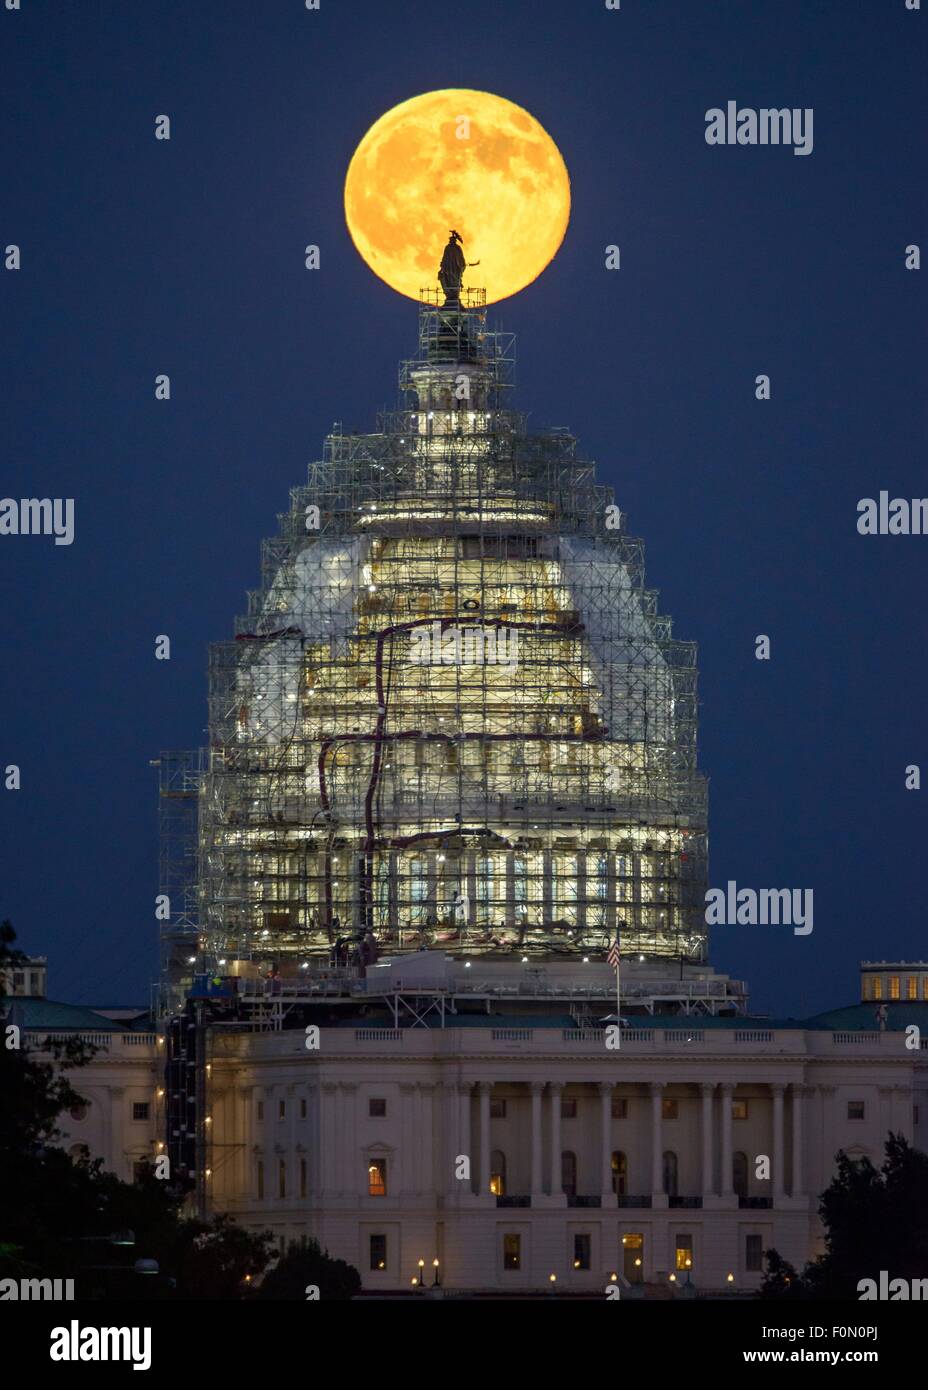 Une deuxième pleine lune du mois de juillet s'élève derrière le dôme de la capitale américaine en ce moment incased dans l'échafaudage pour la restauration, le 31 juillet 2015 à Washington, DC. Deux pleines lunes dans le même mois sont souvent désignées comme une Lune Bleue. Banque D'Images